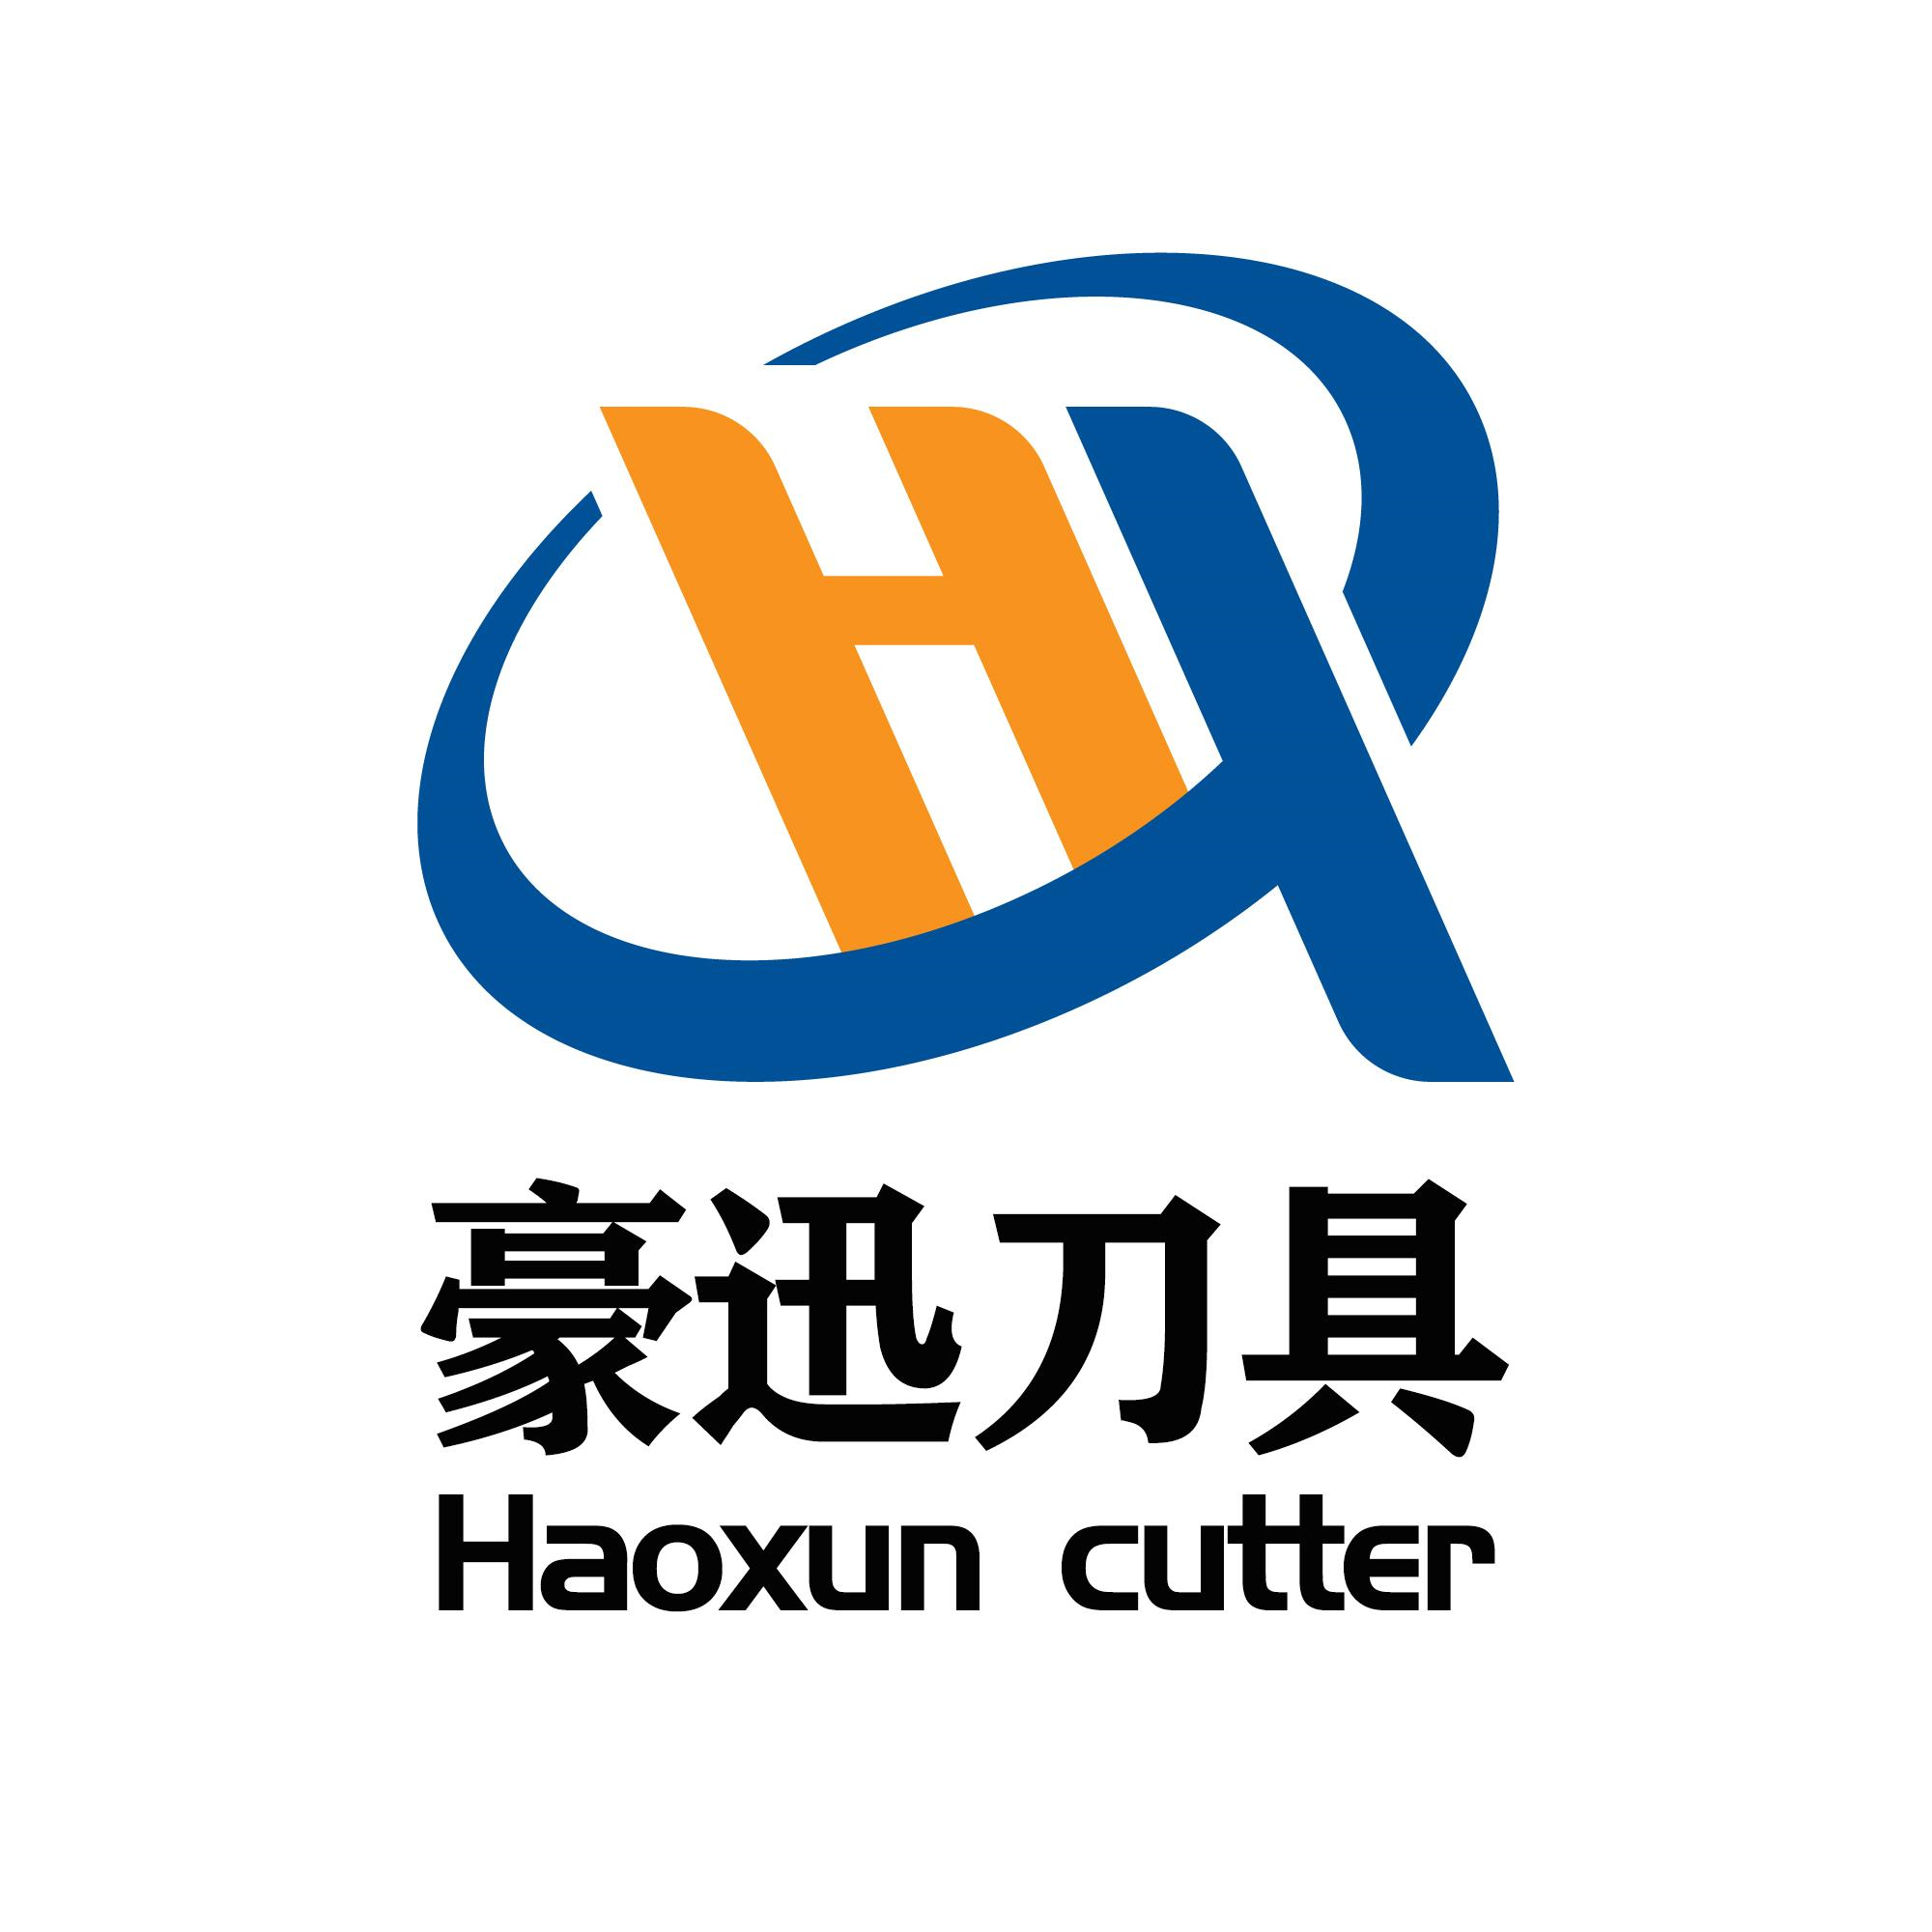 商标文字豪迅刀具 haoxun cutter商标注册号 60503552,商标申请人南京